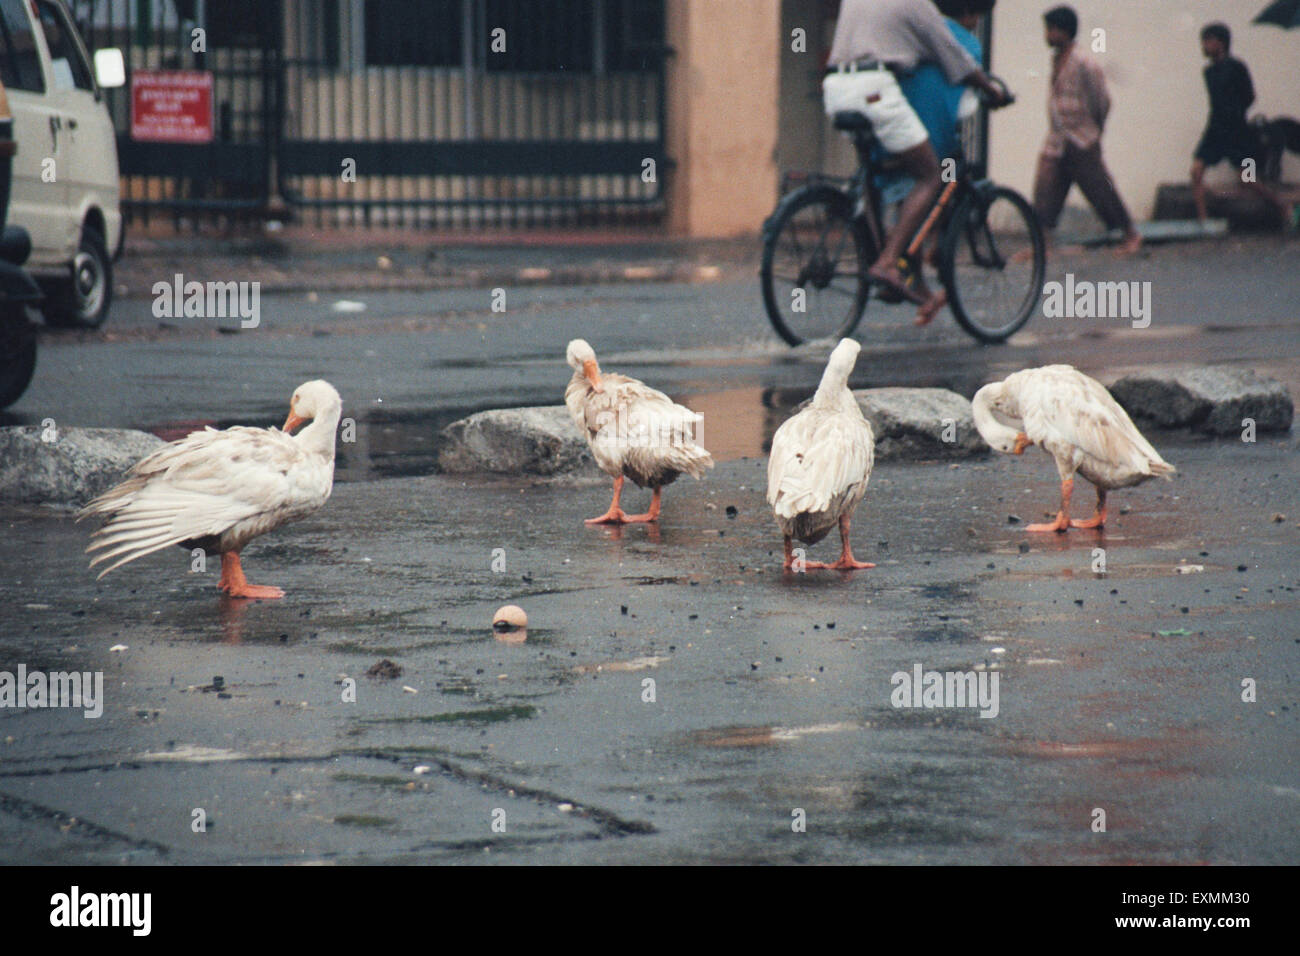 Ducks on the road, Bombay, Mumbai, Maharashtra, India, Asia Stock Photo